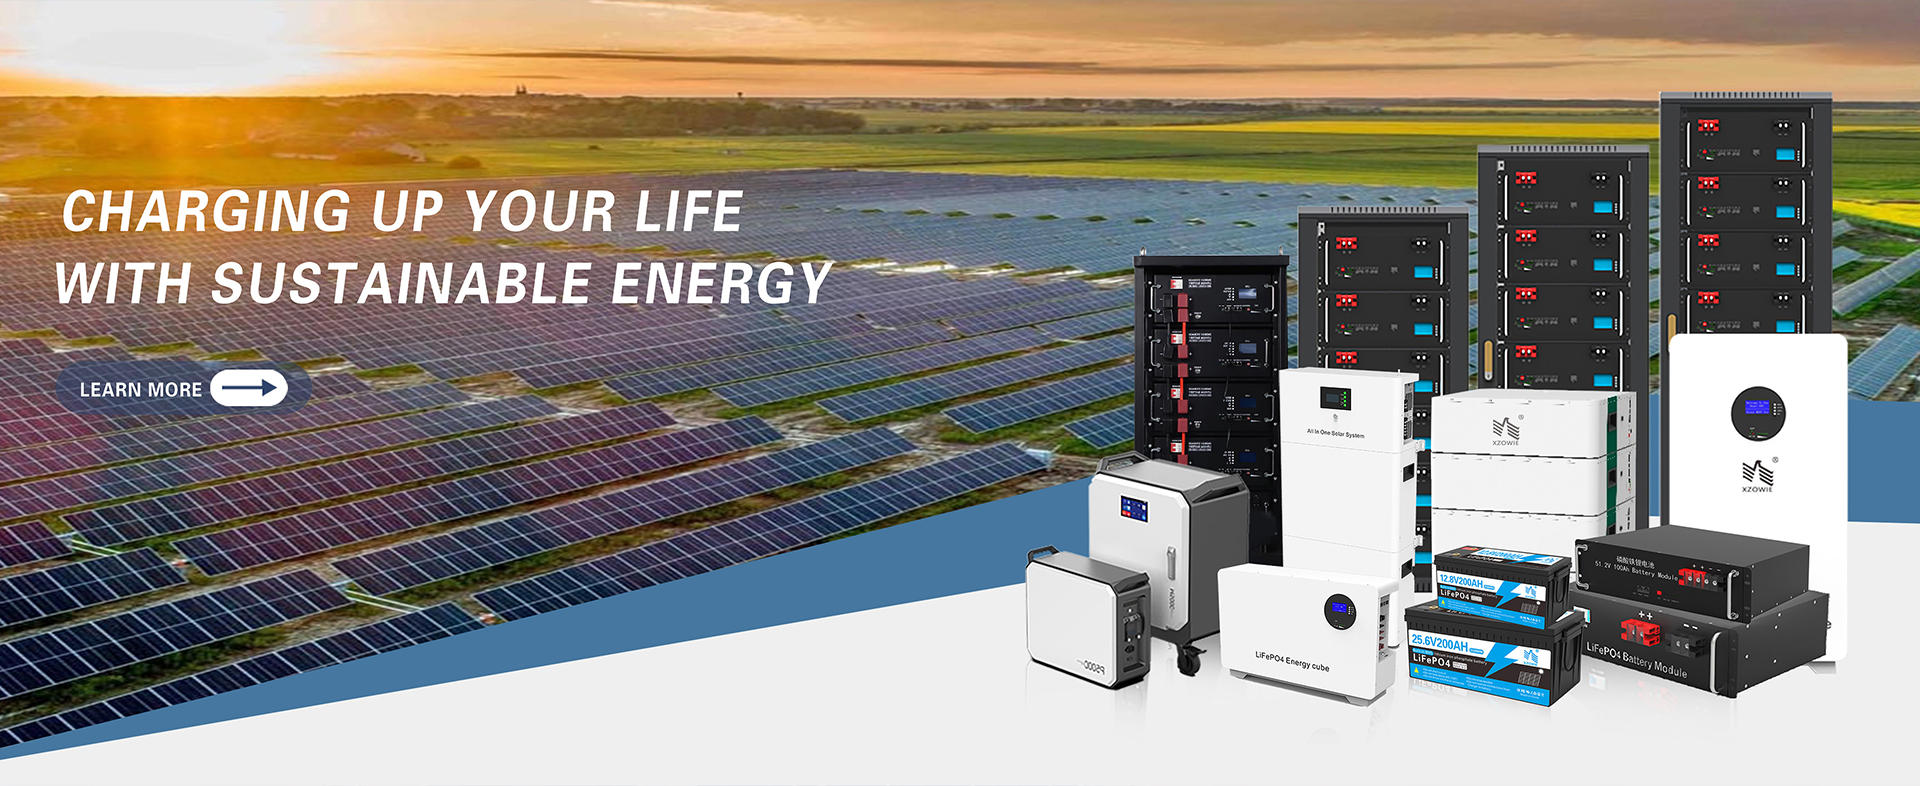 Henan Zhuowei New Energy Technology Co., Ltd